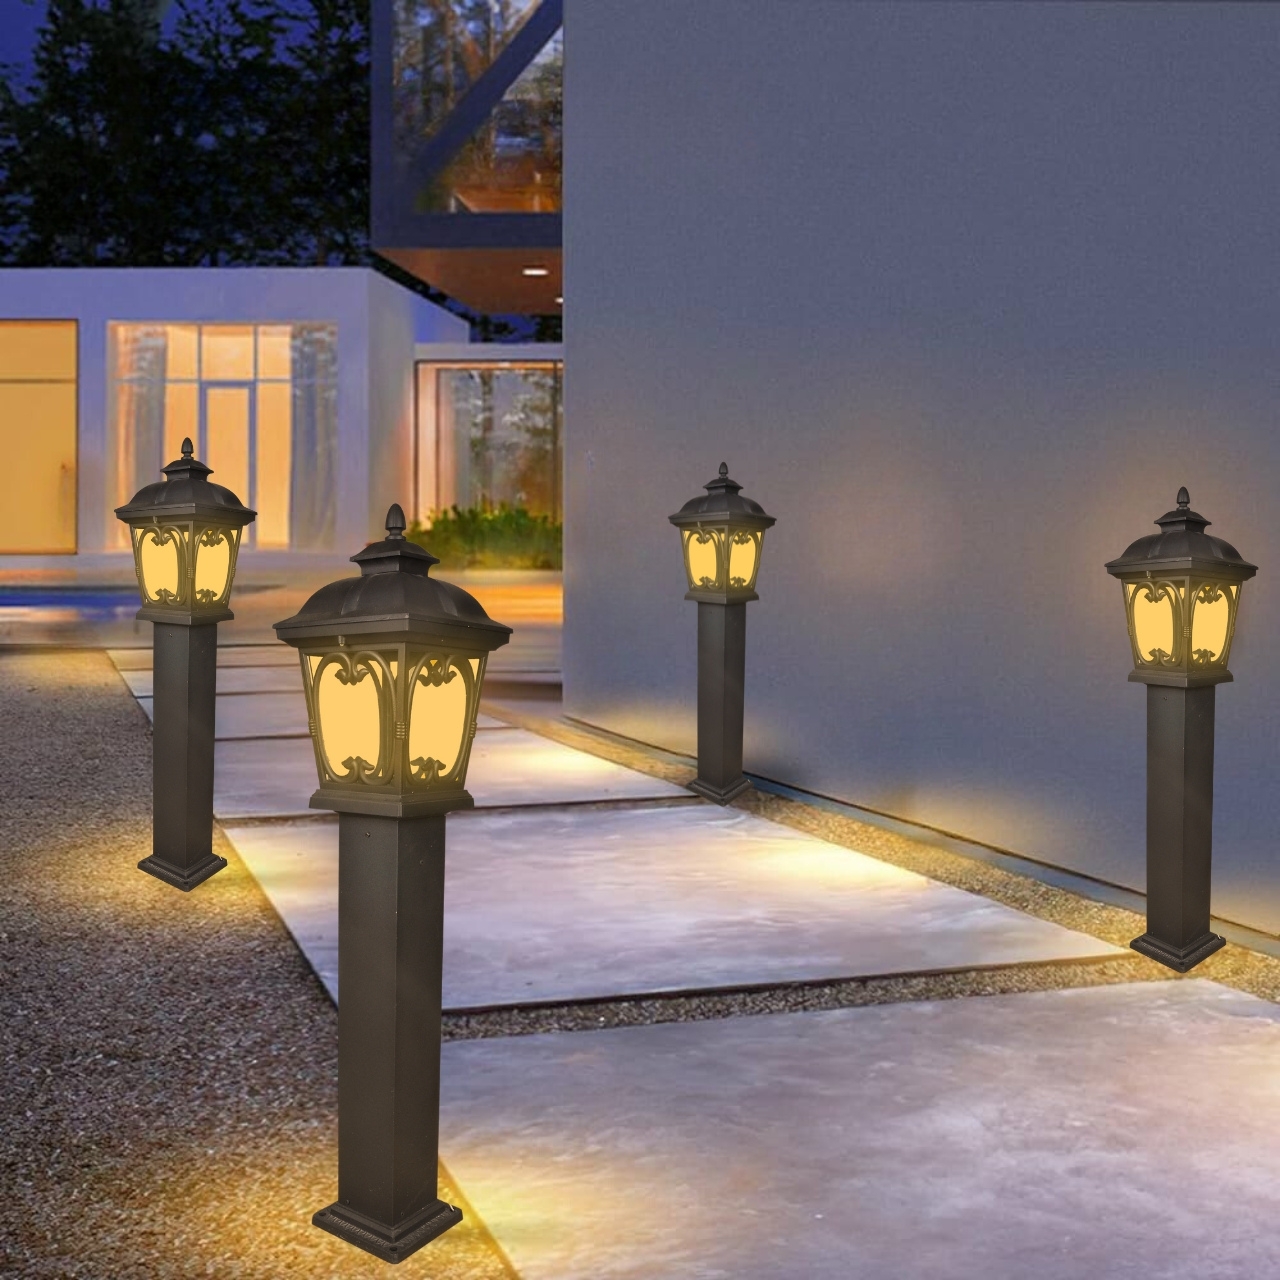 garden bollard light E27 bulb type for parks, pathways, hotels